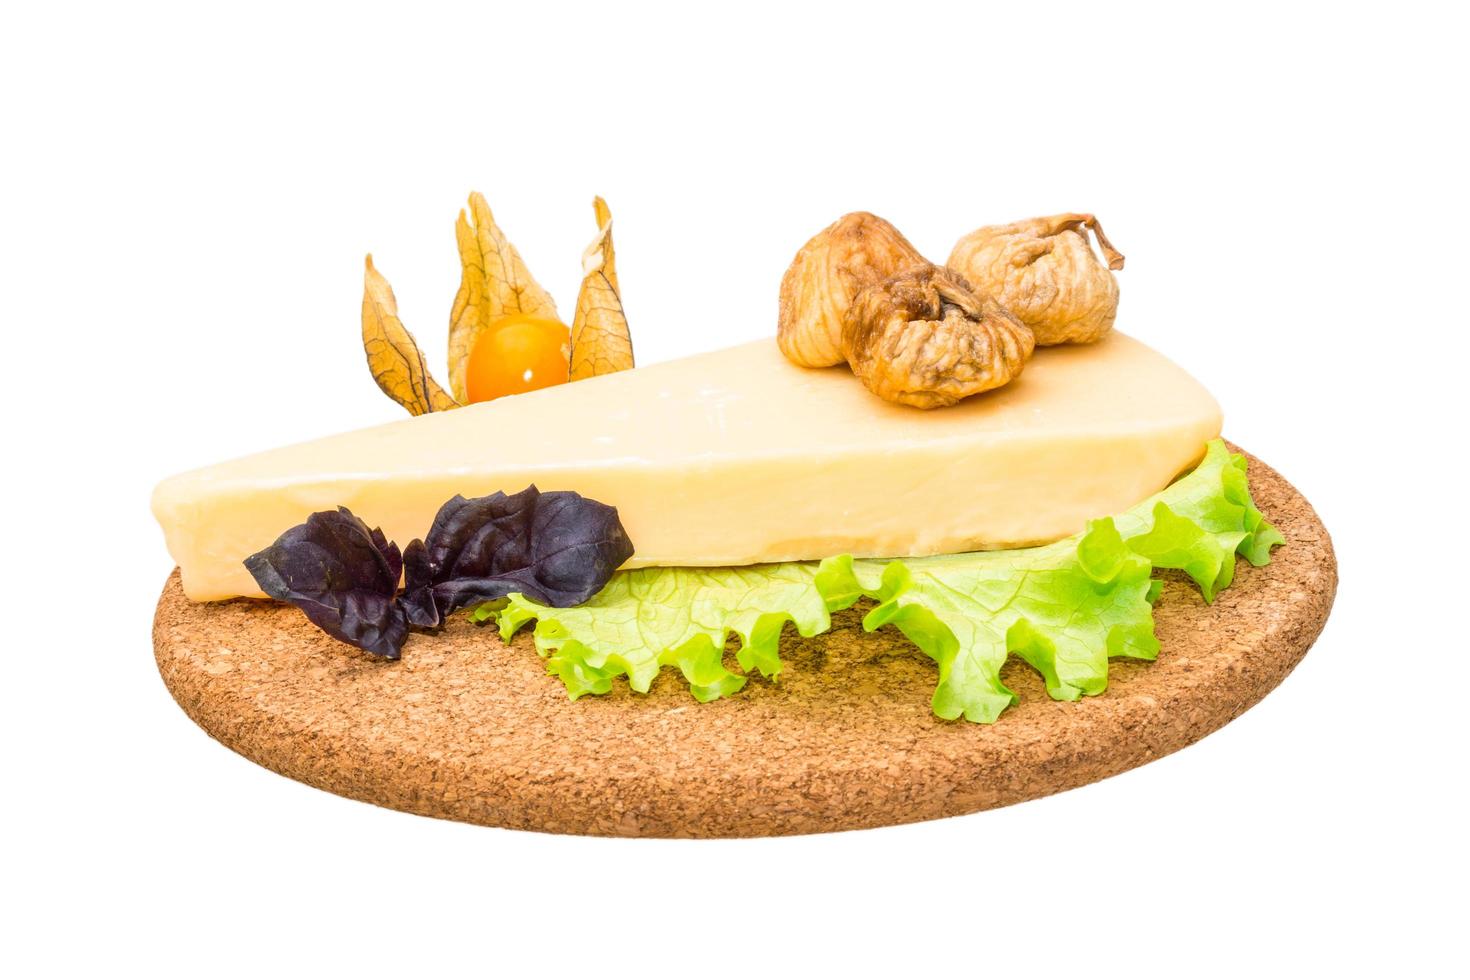 parmigiano formaggio su di legno tavola e bianca sfondo foto